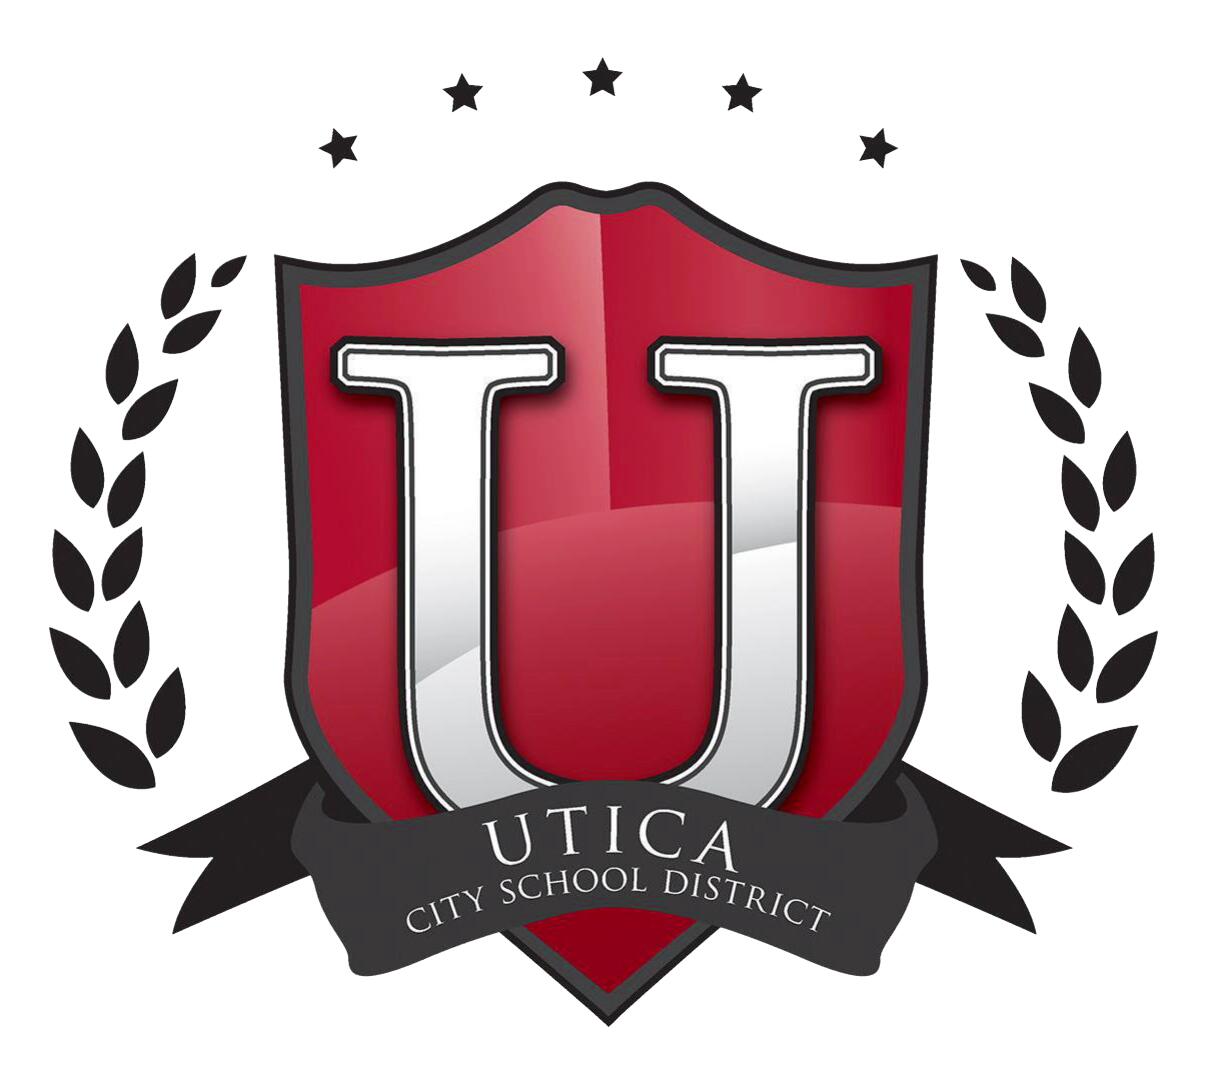 Okręg szkolny miasta Utica